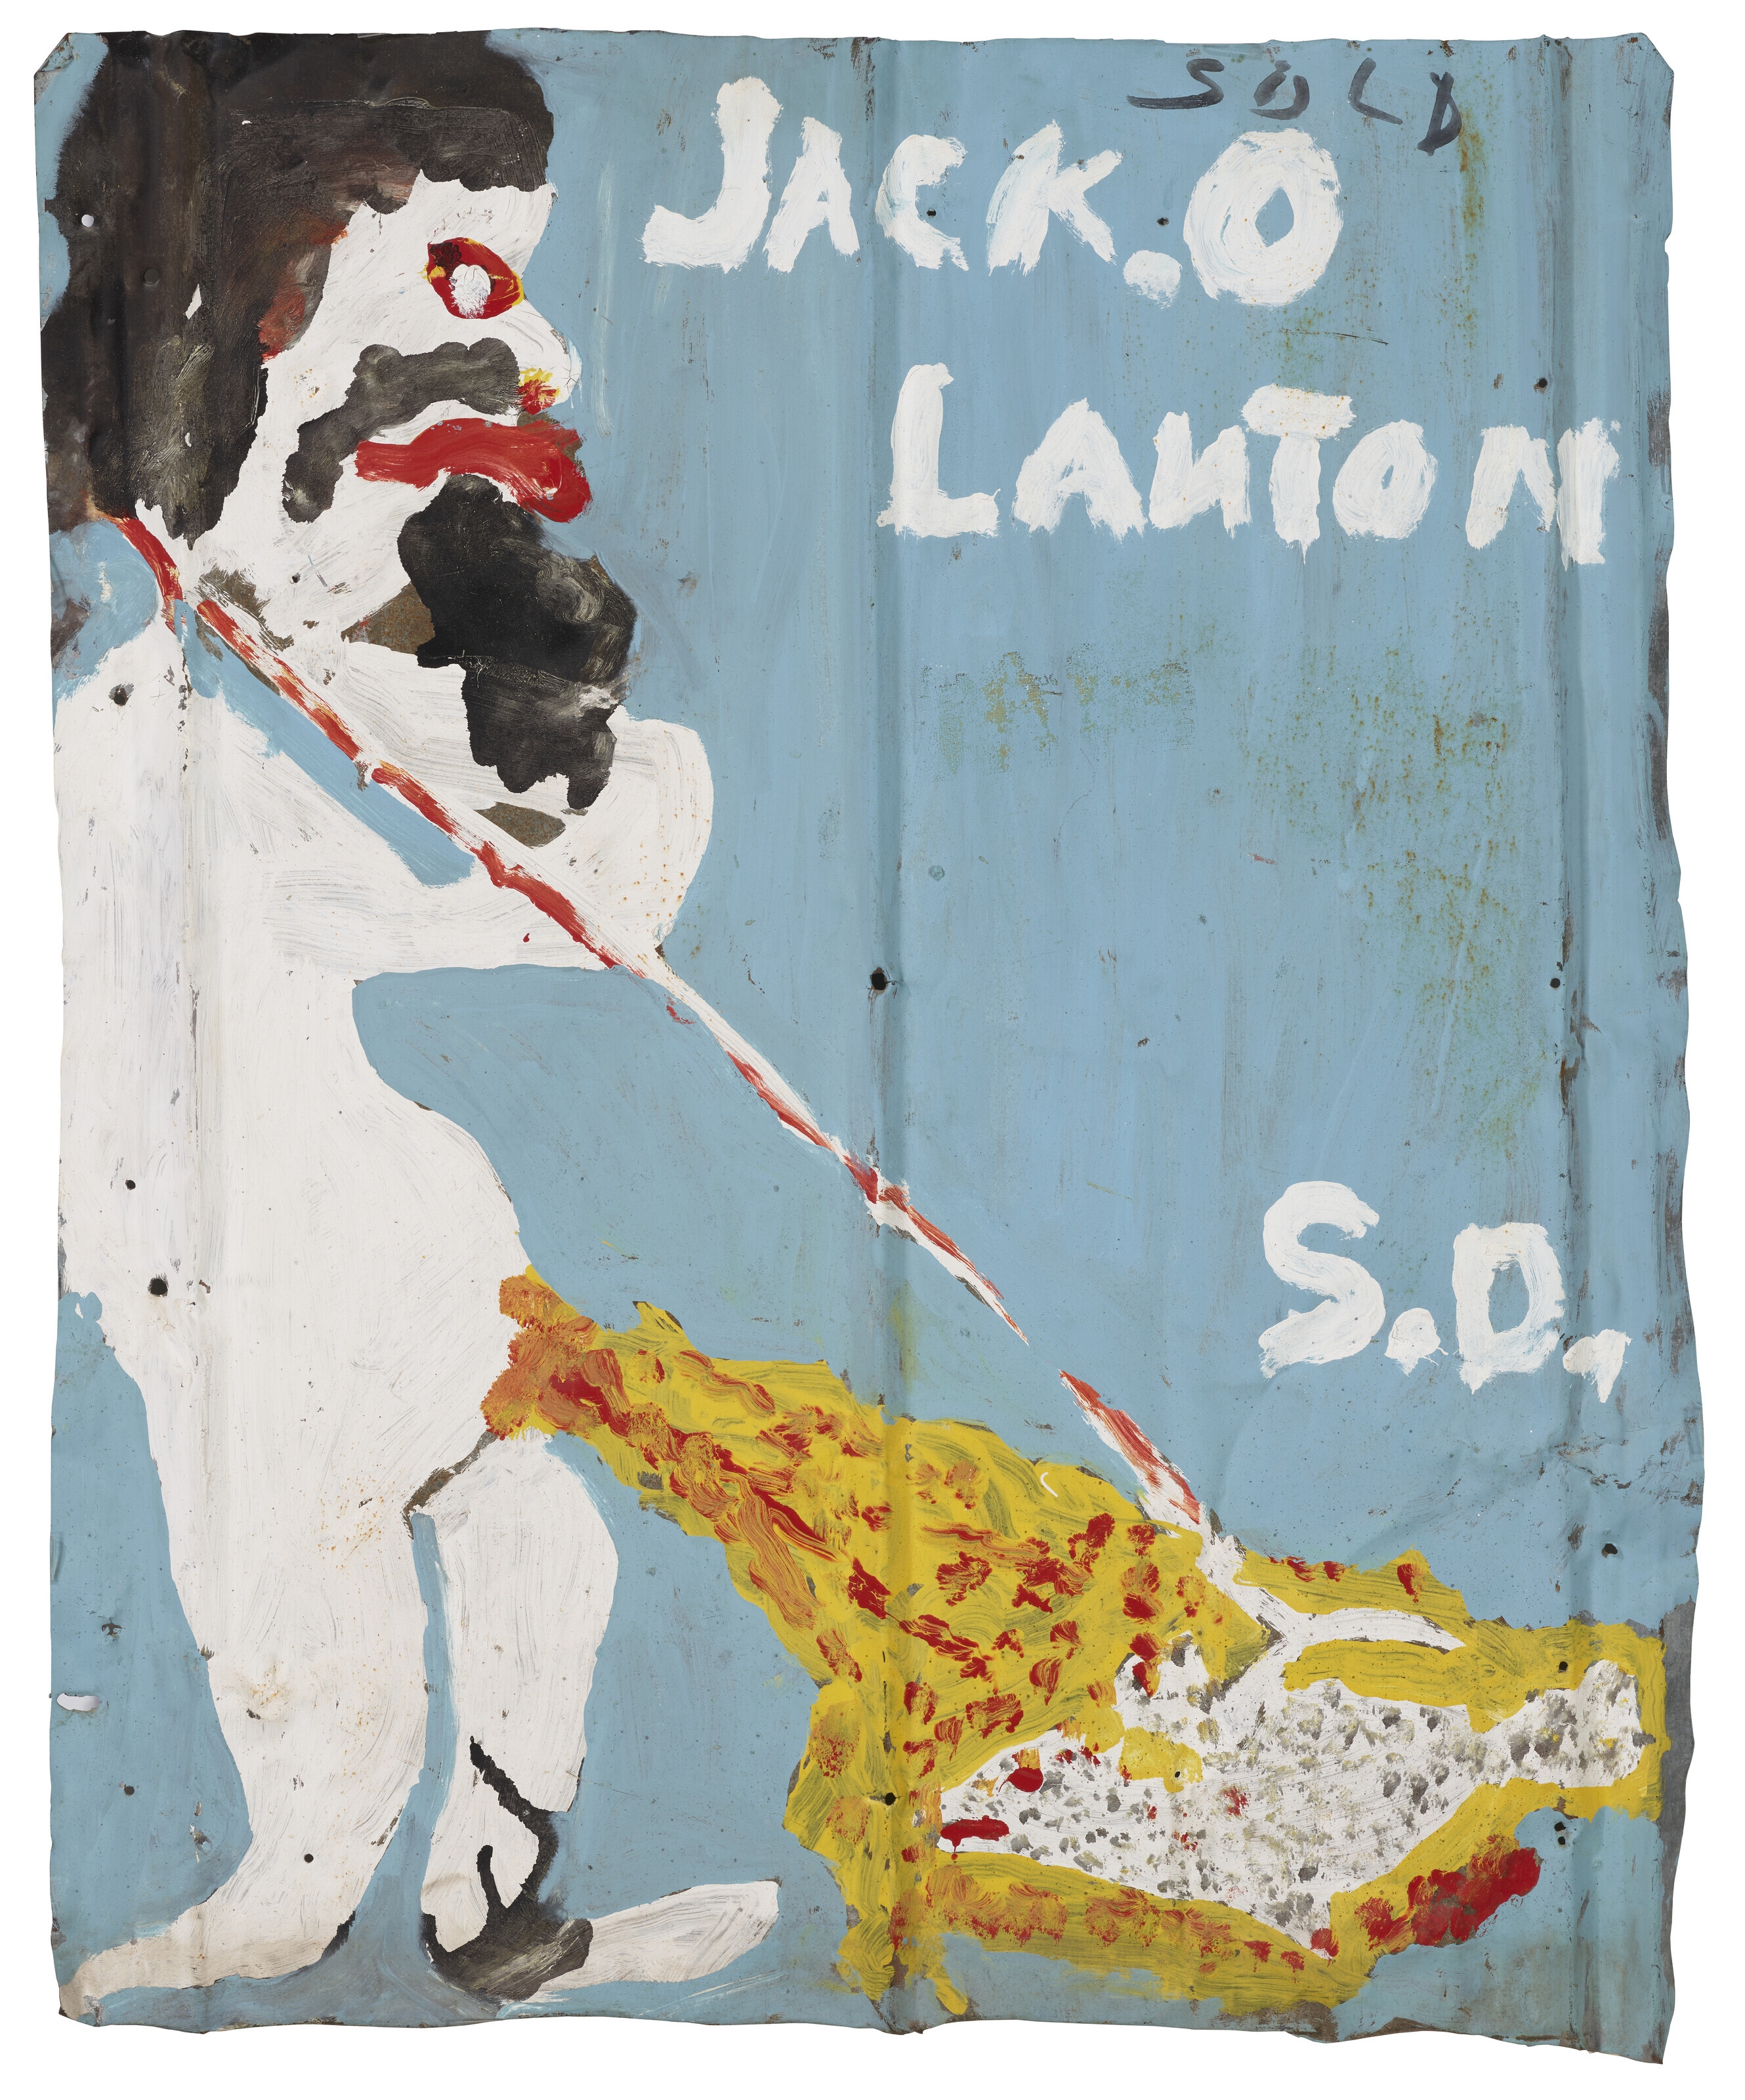 JACK. O LANTON by Sam Doyle